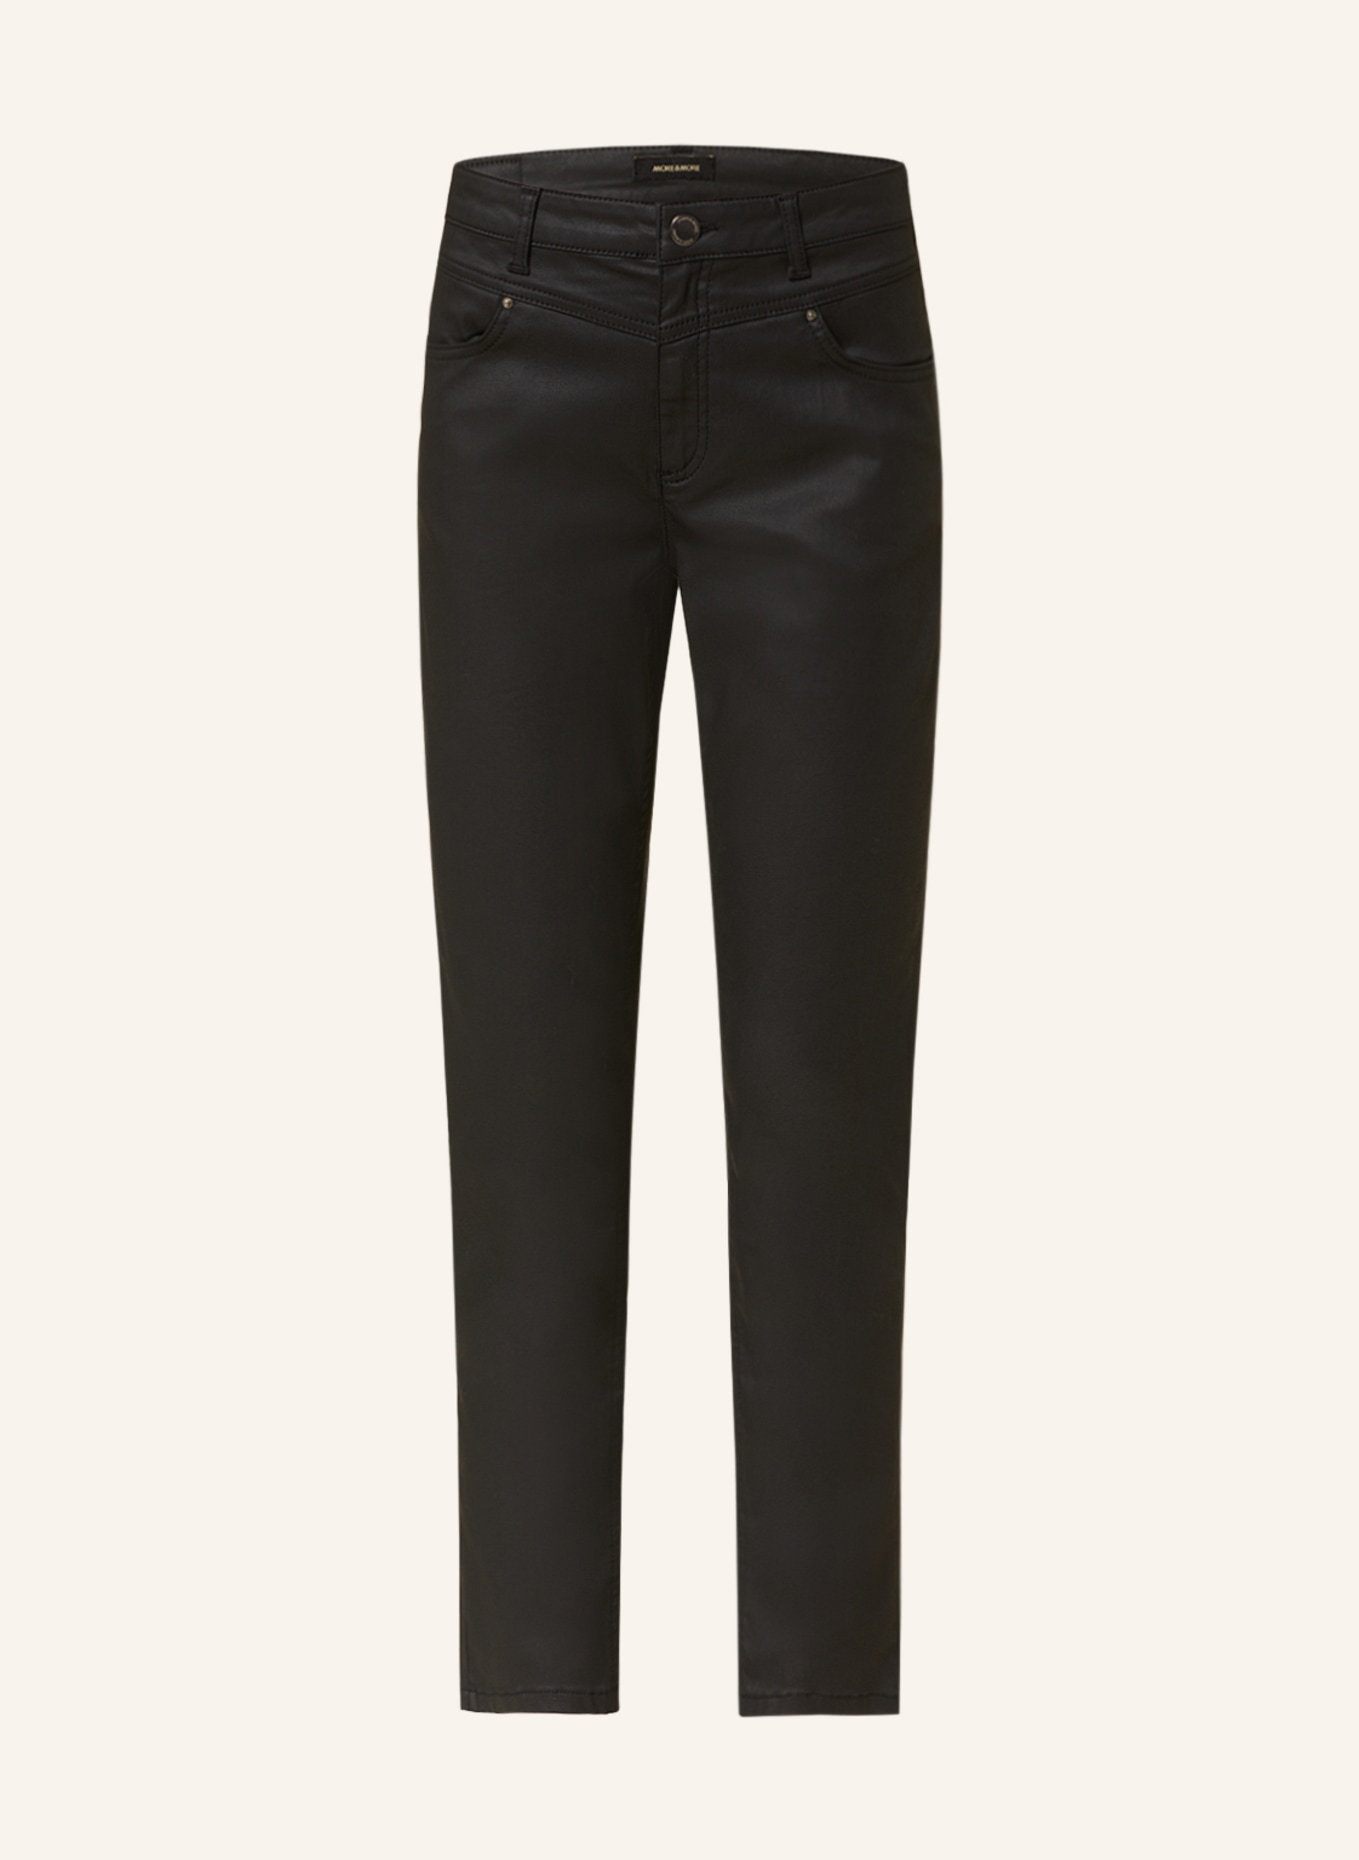 MORE & MORE Skinny Jeans, Farbe: 0790 BLACK (Bild 1)